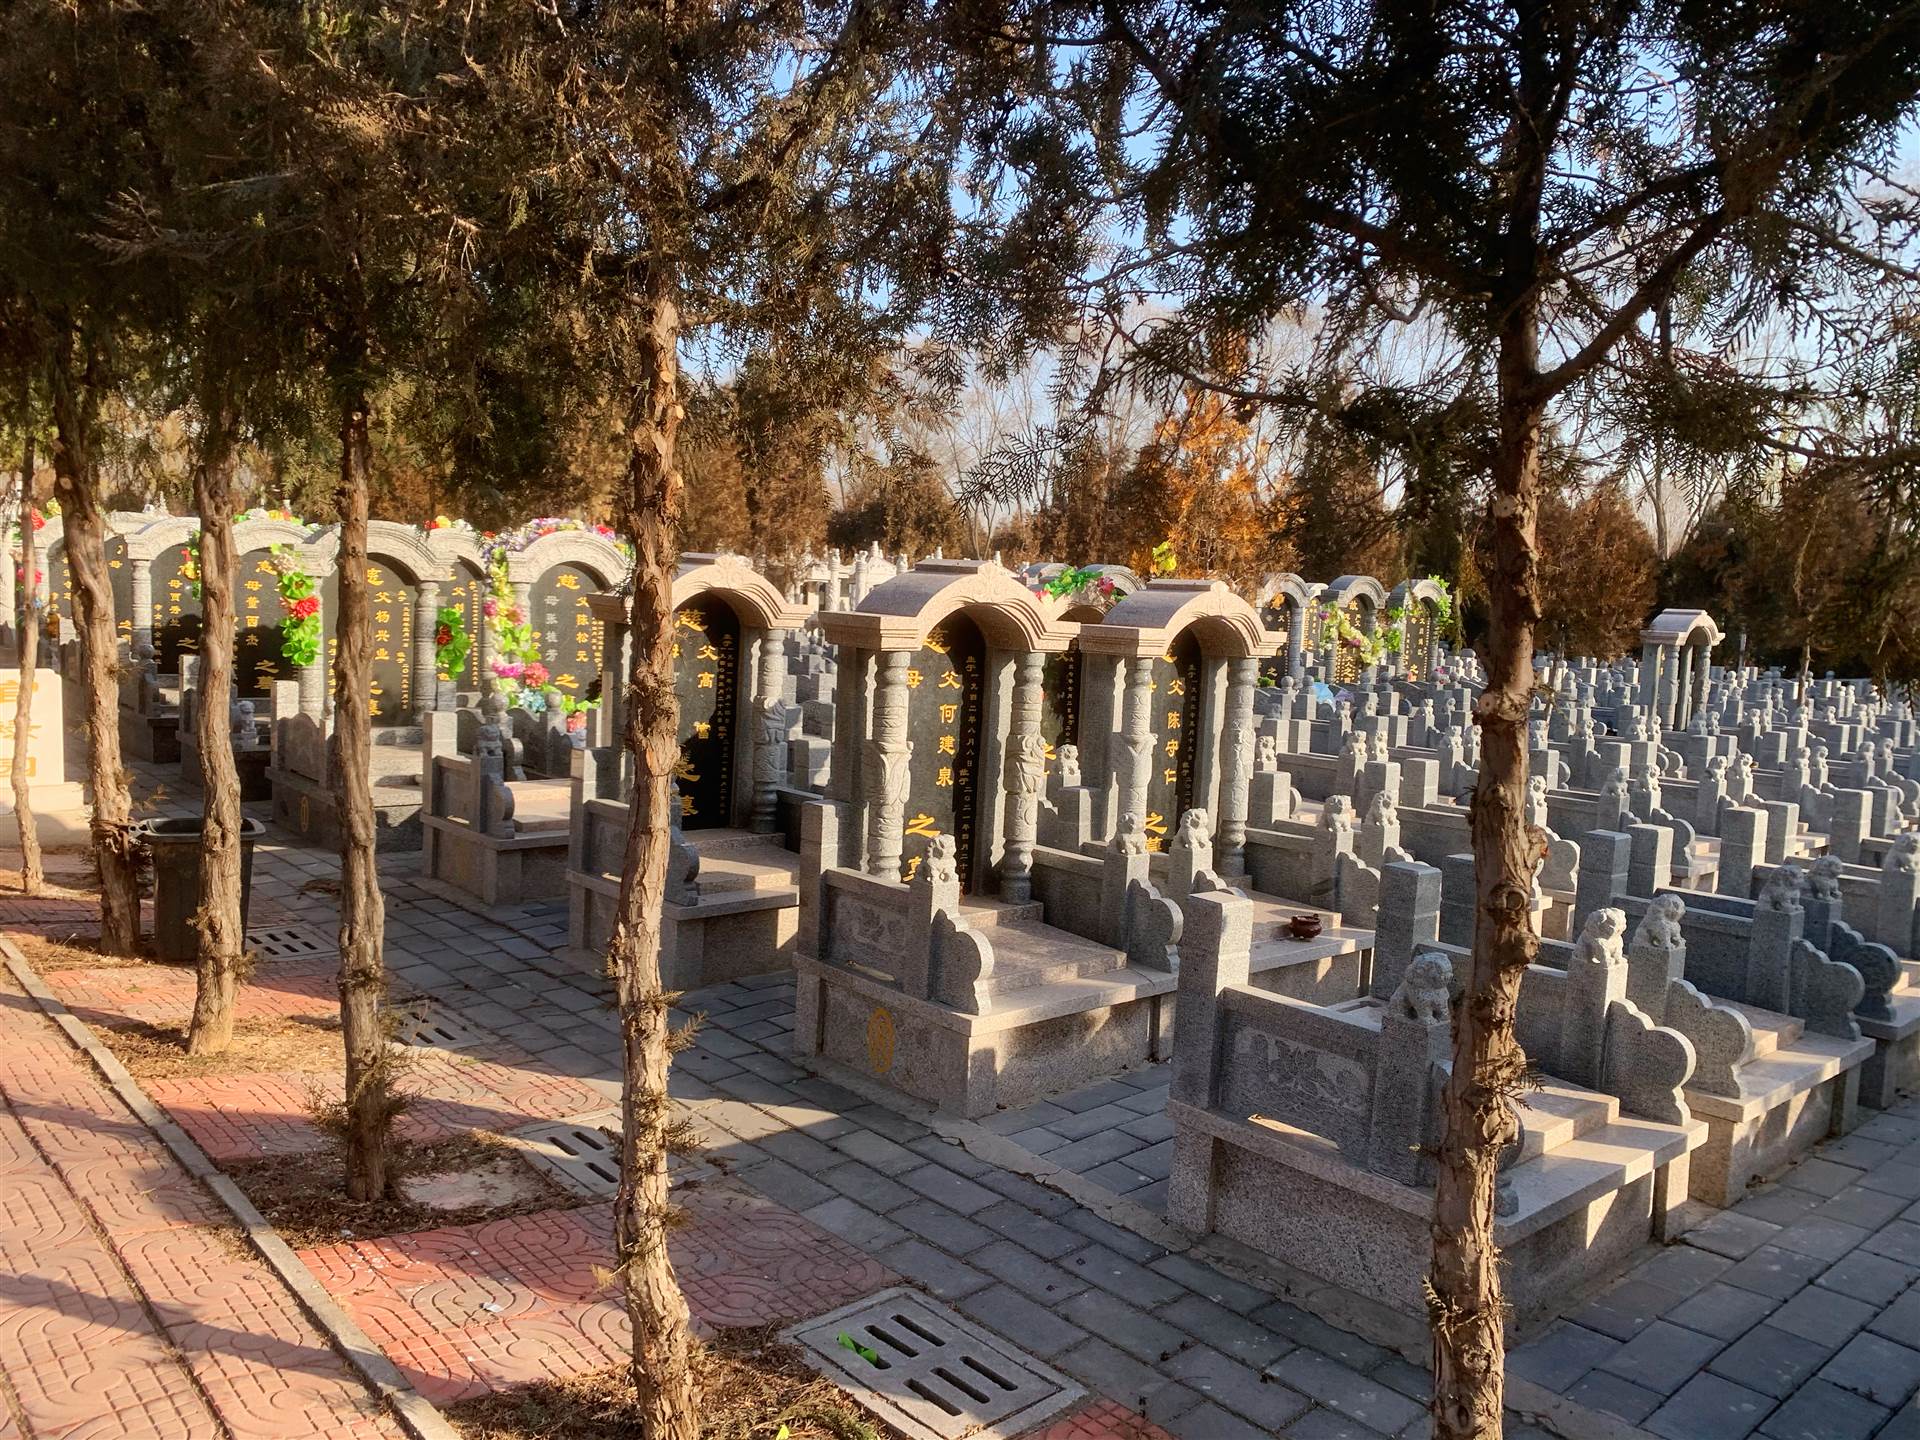 占地面积50余亩,为通州区民政局批准建立的合法公墓,同时德芳潭陵园